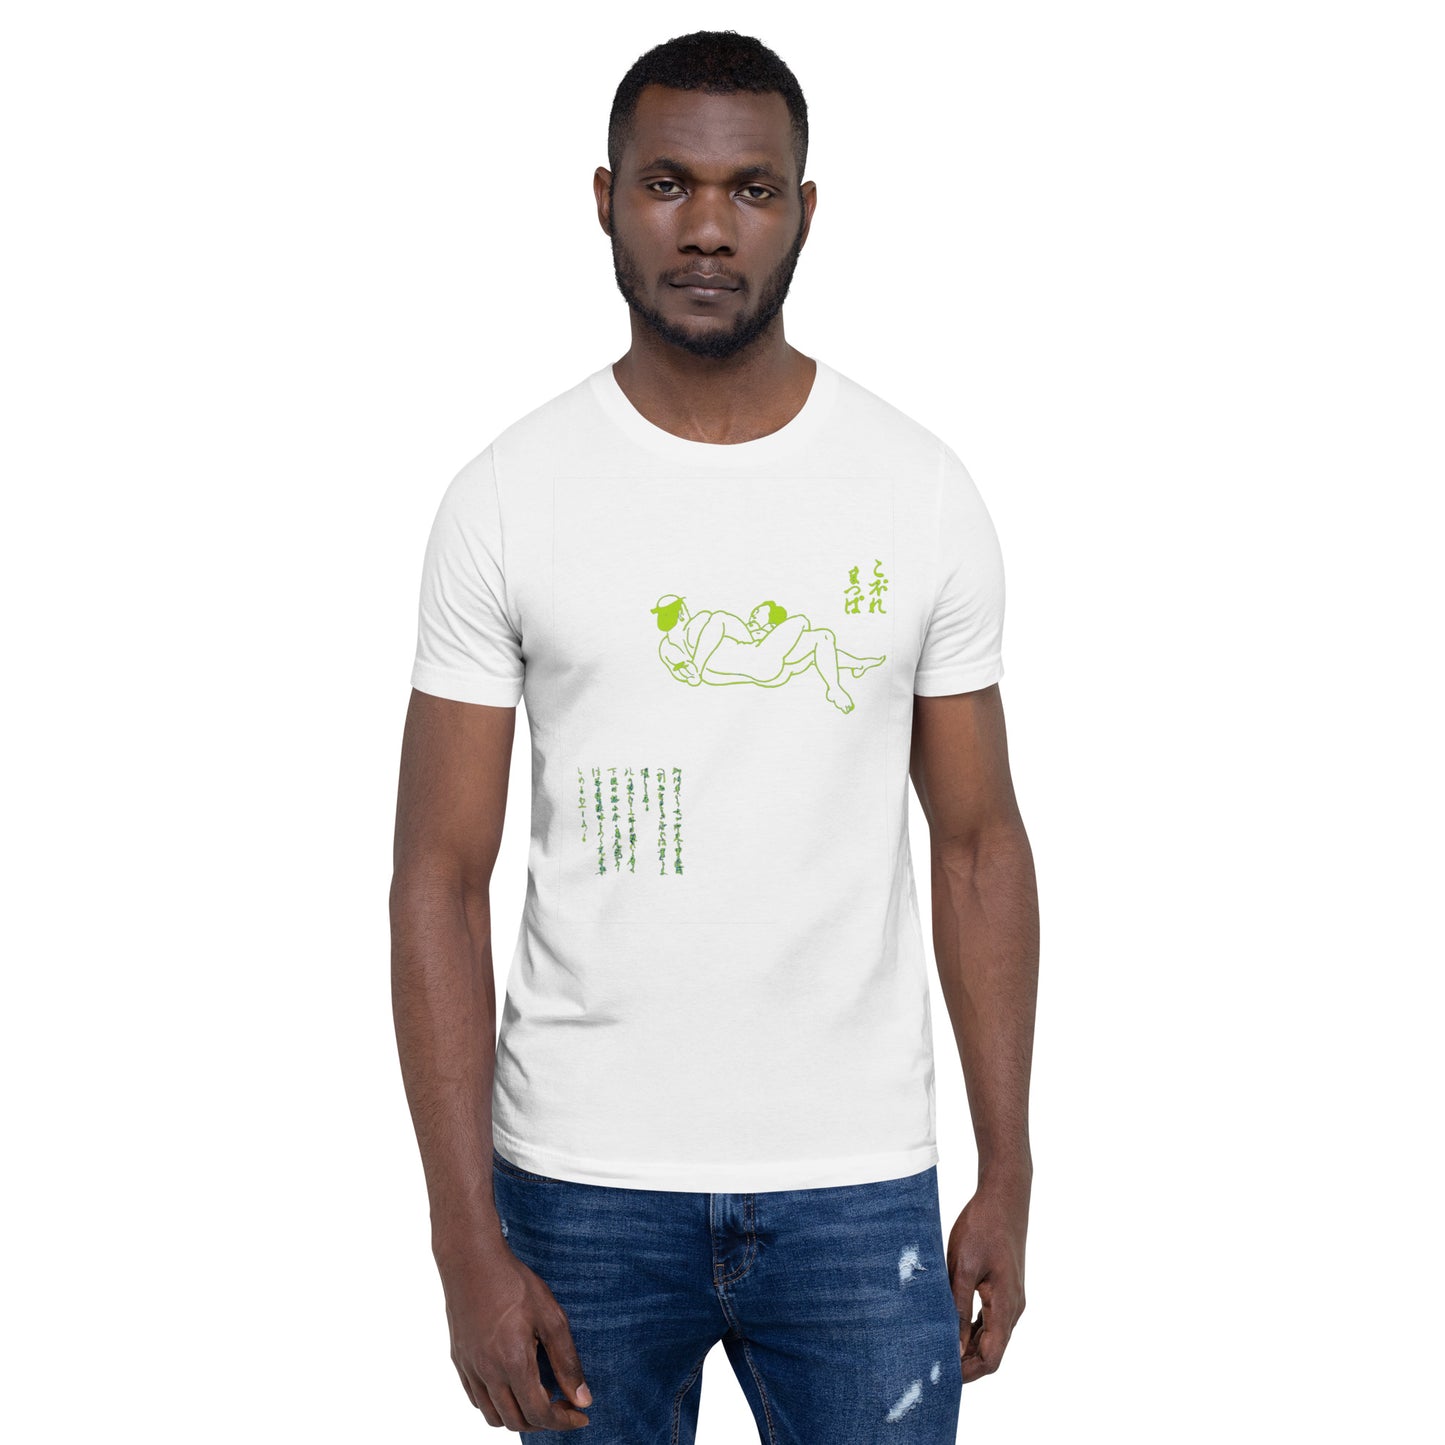 Unisex t-shirt "60 KOBORE MATSUBA" White